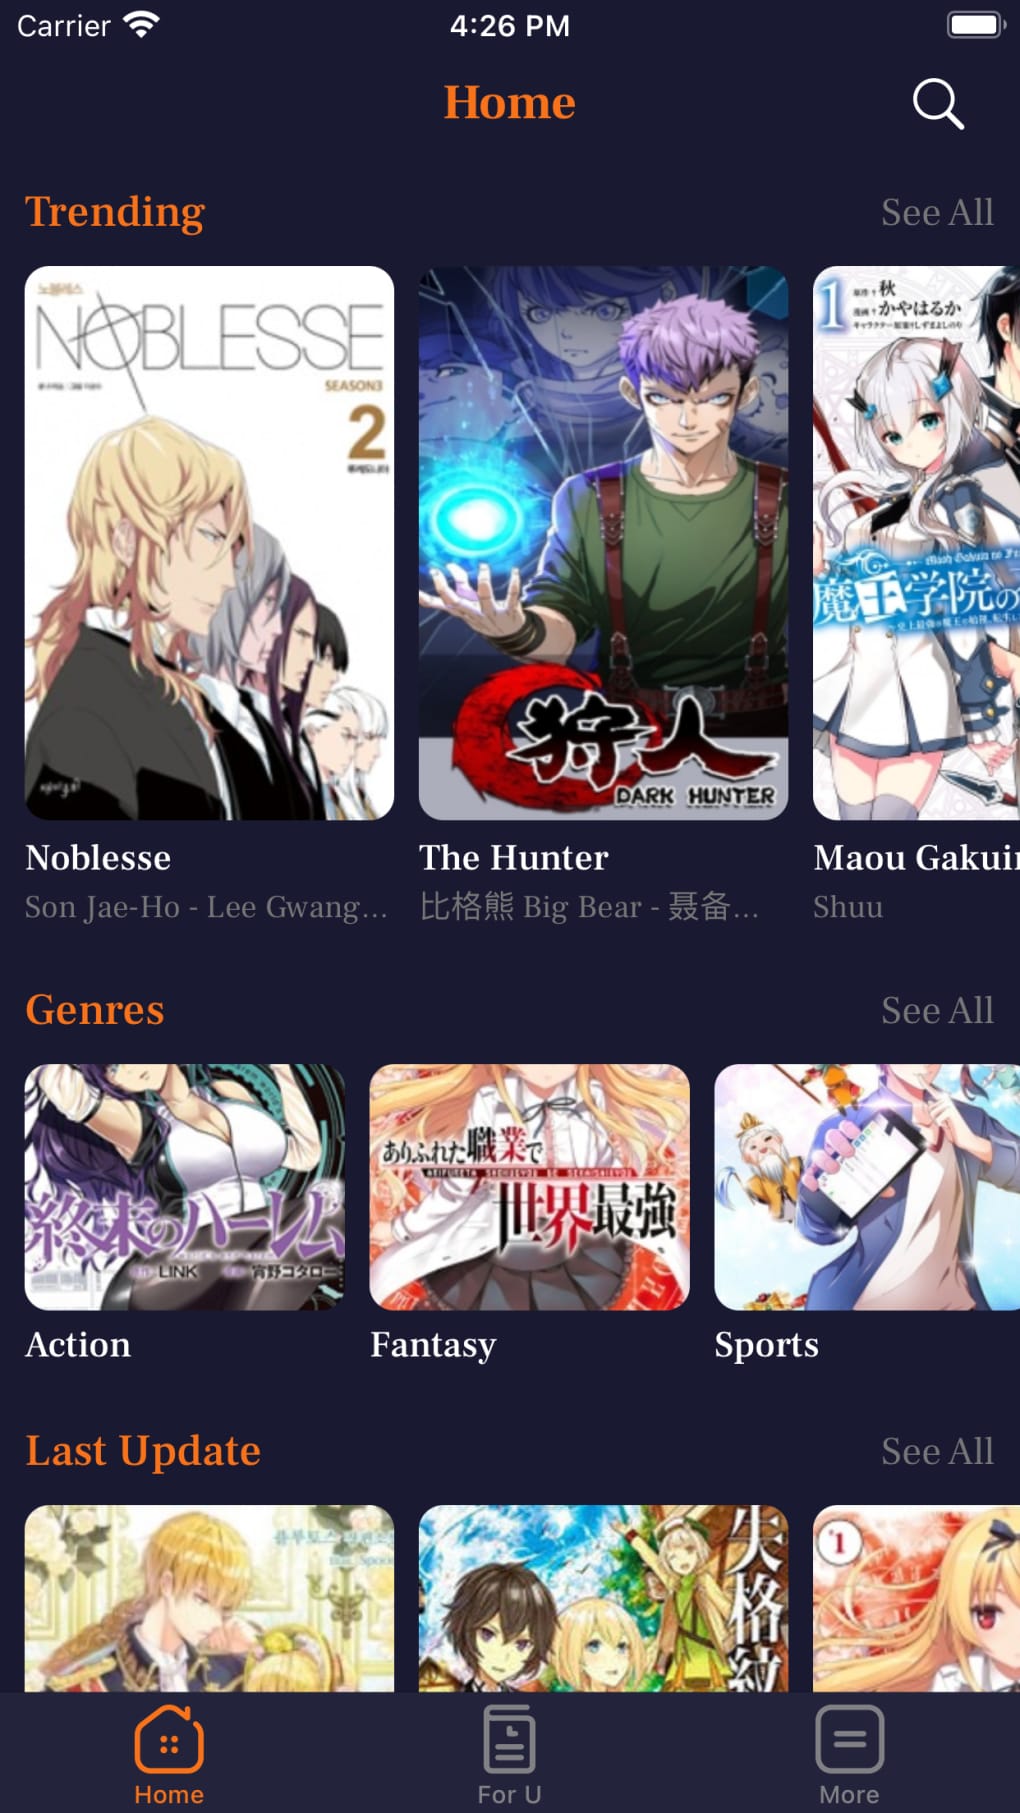 Manga Man: Top Manga Reader for iPhone - Download